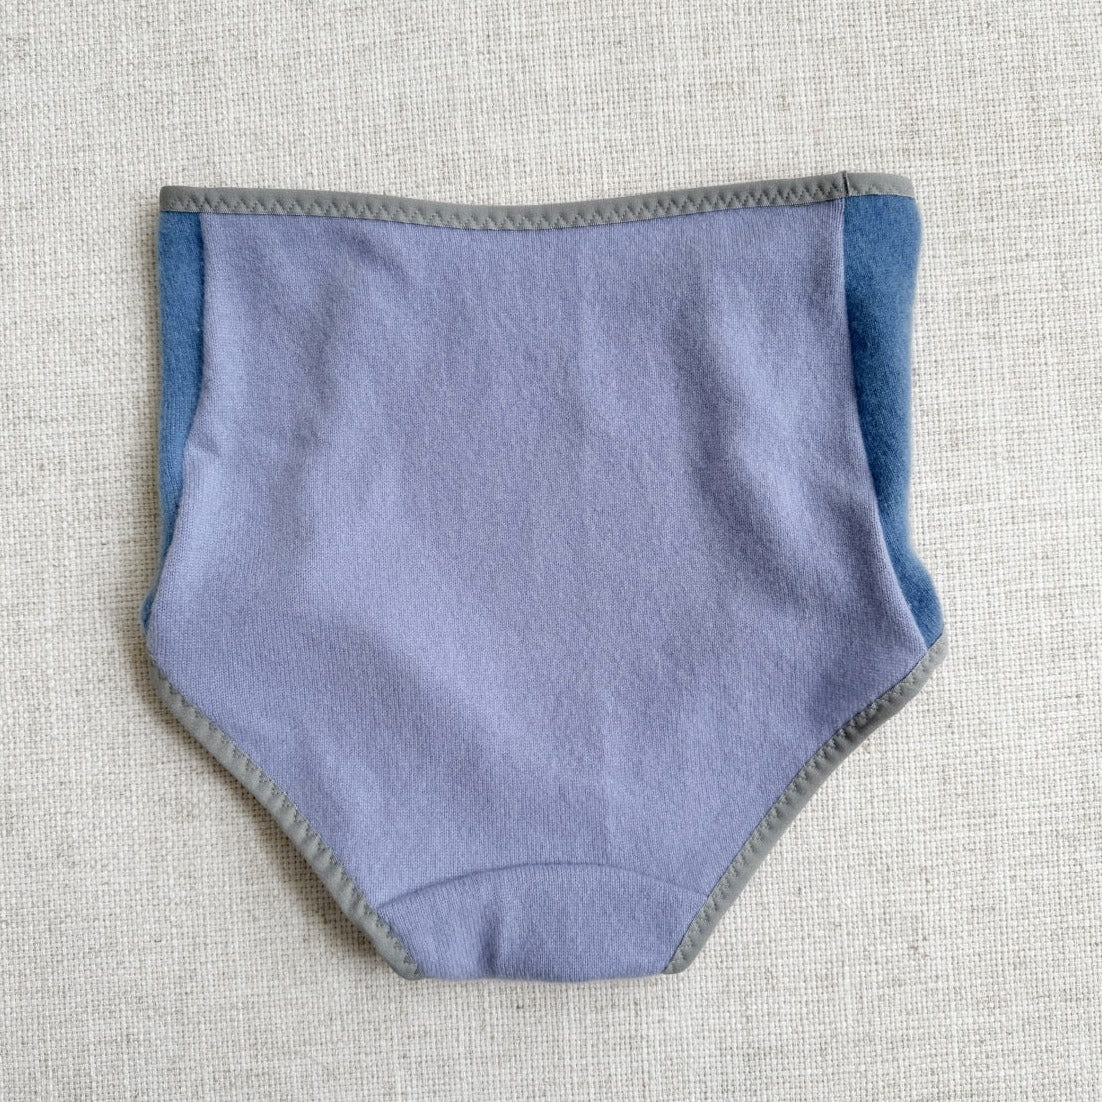 Blue cashmere underwear brief for women